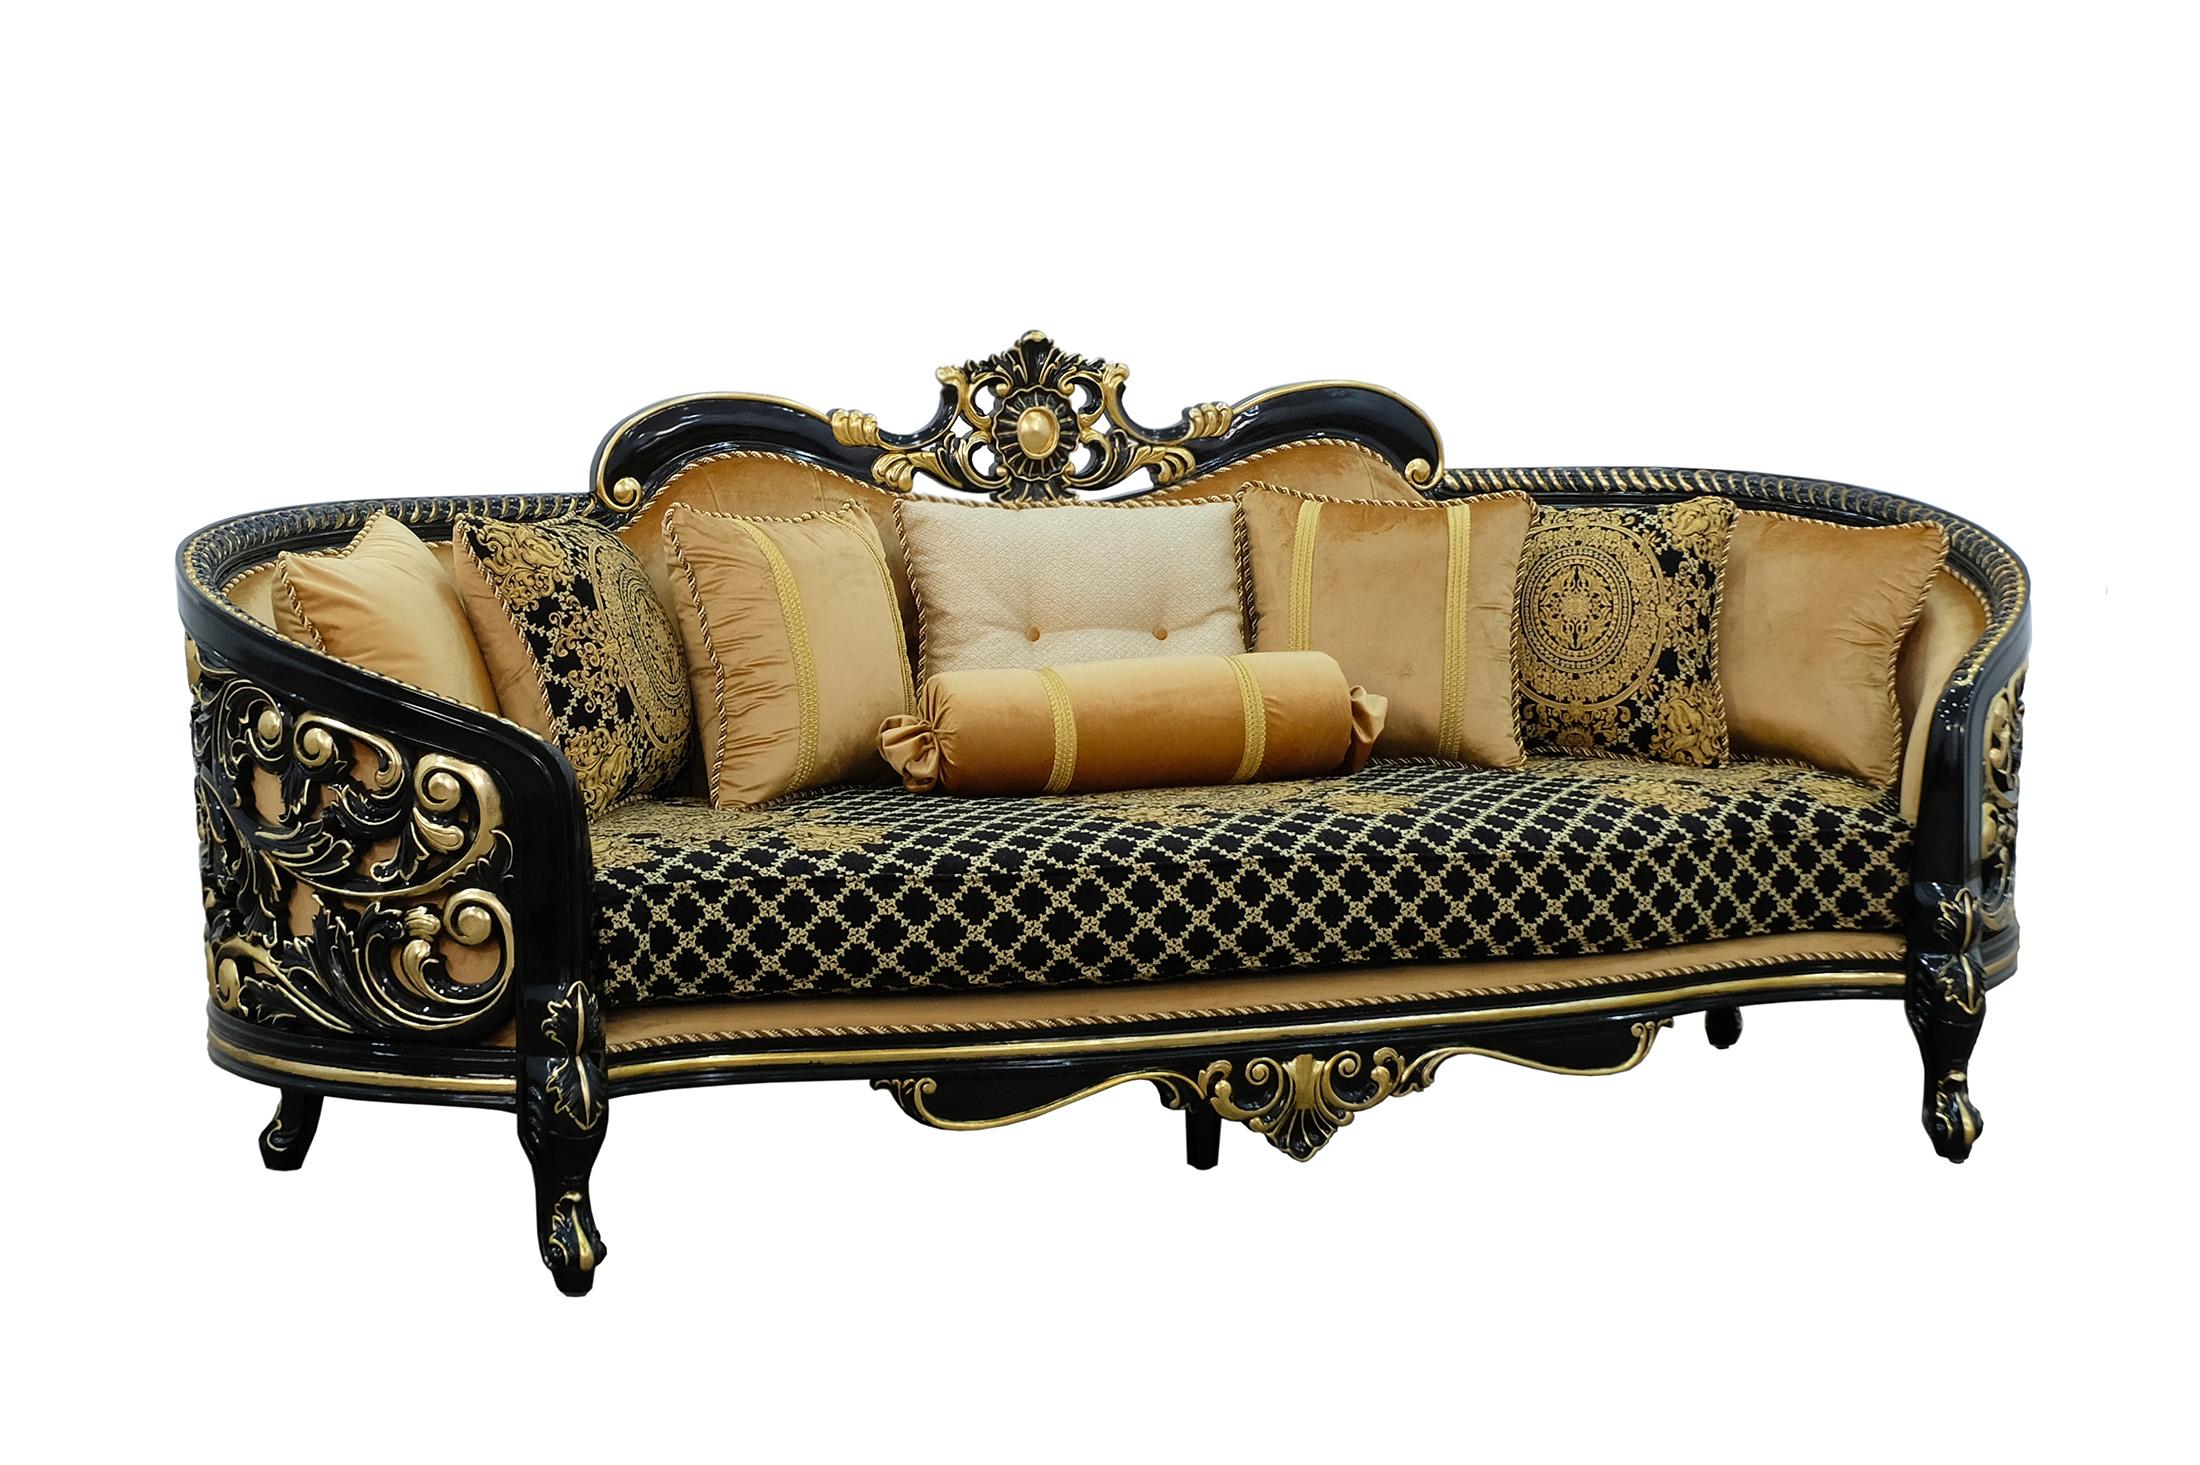 Classic, Traditional Sofa BELLAGIO III 30019-S in Antique, Gold, Black Velvet